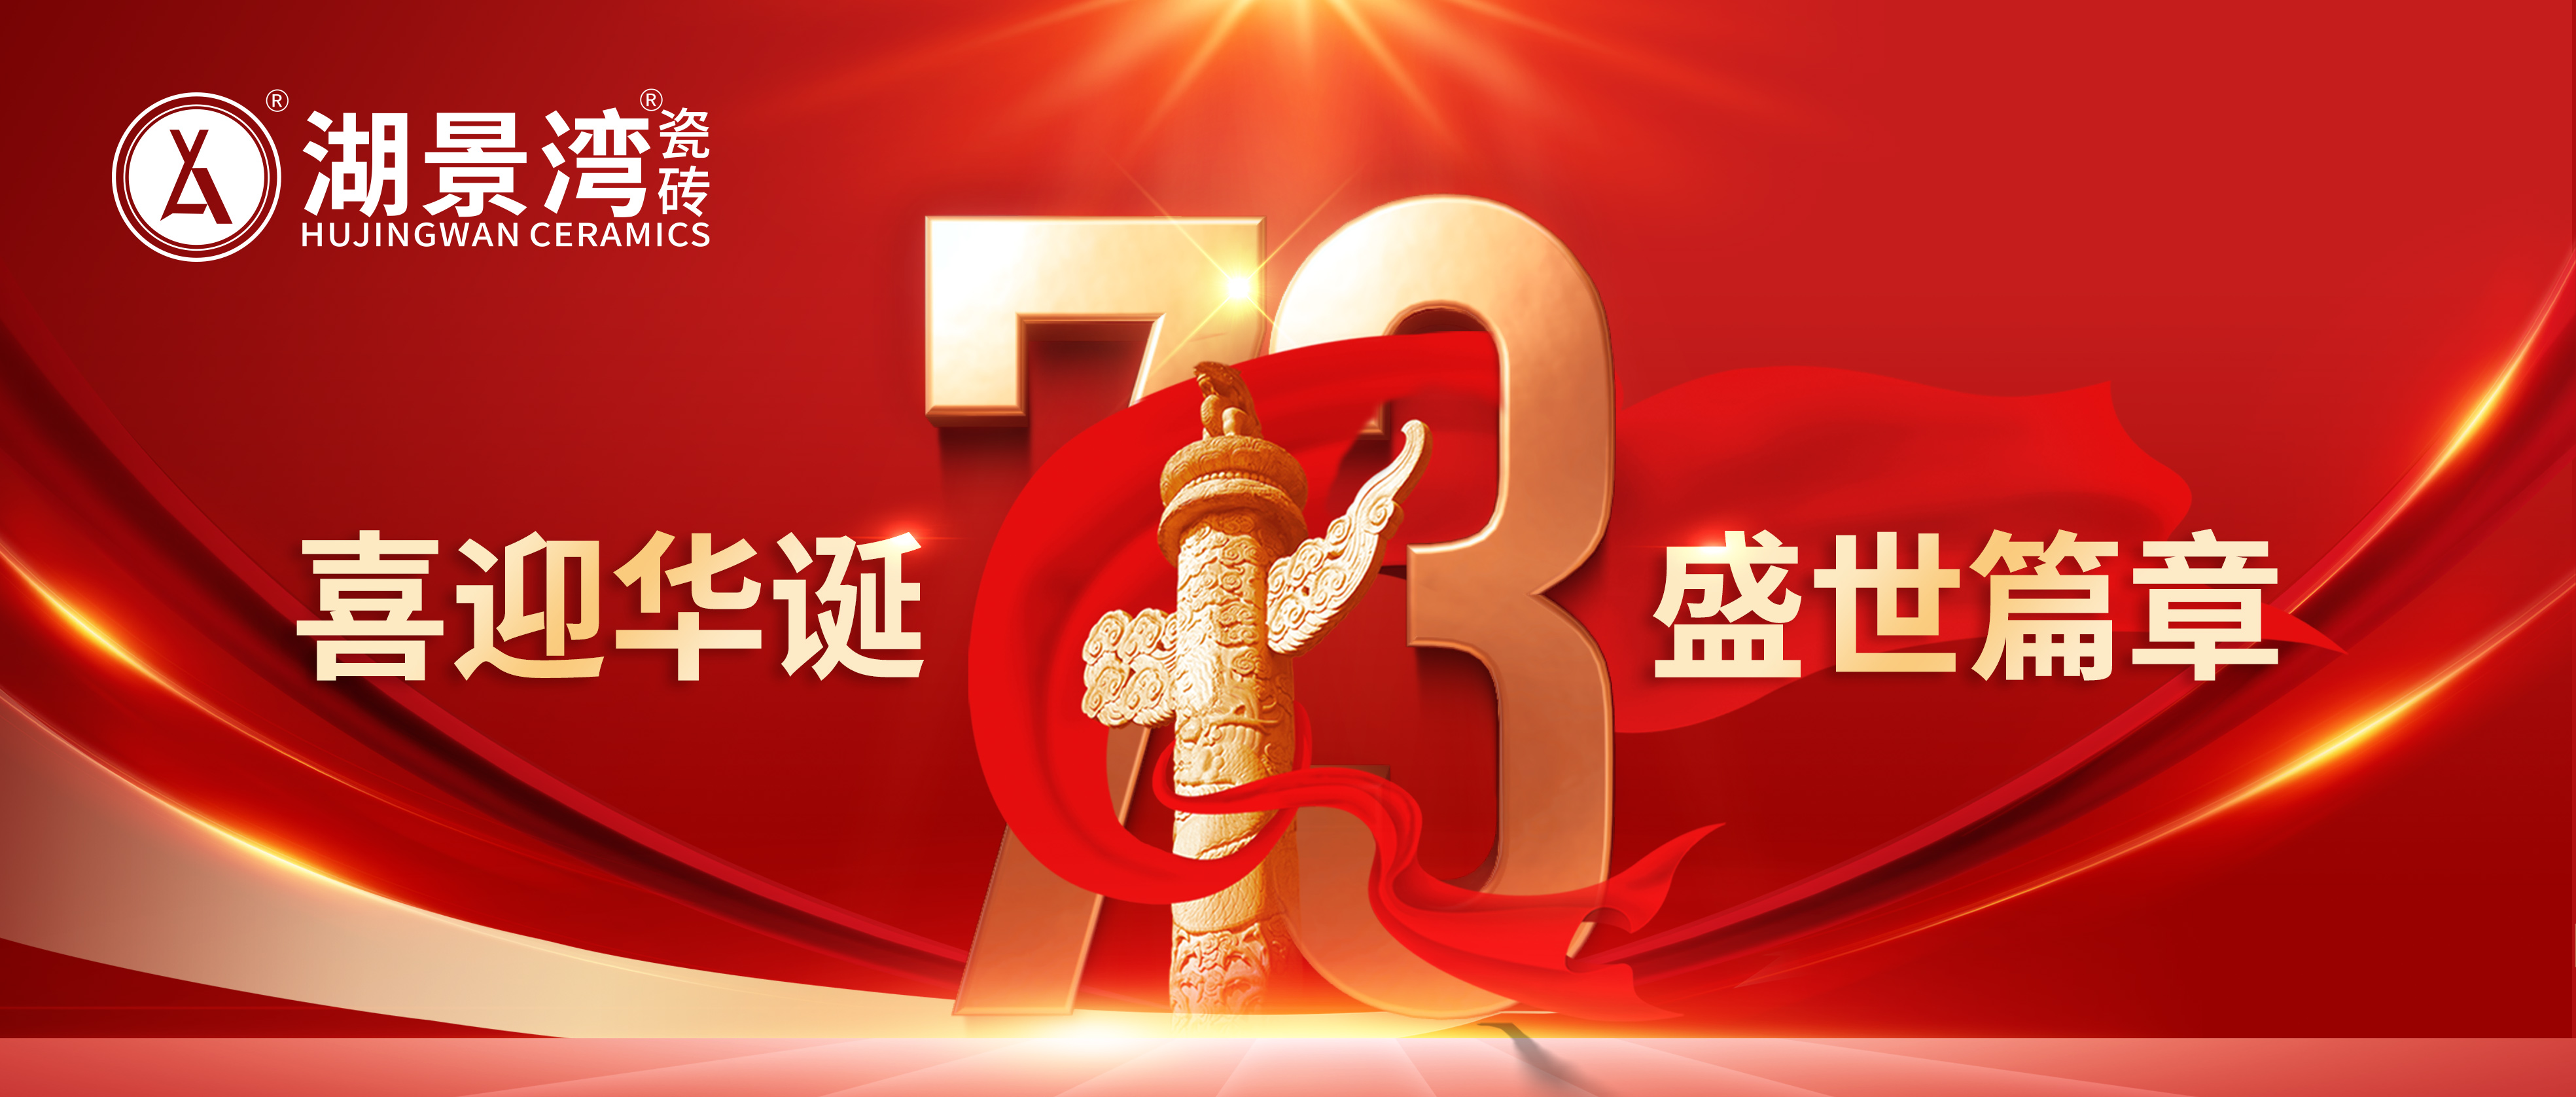 欢度国庆 | 阖家欢乐，四海升平。湖景湾陶瓷祝福祖国生日快乐！